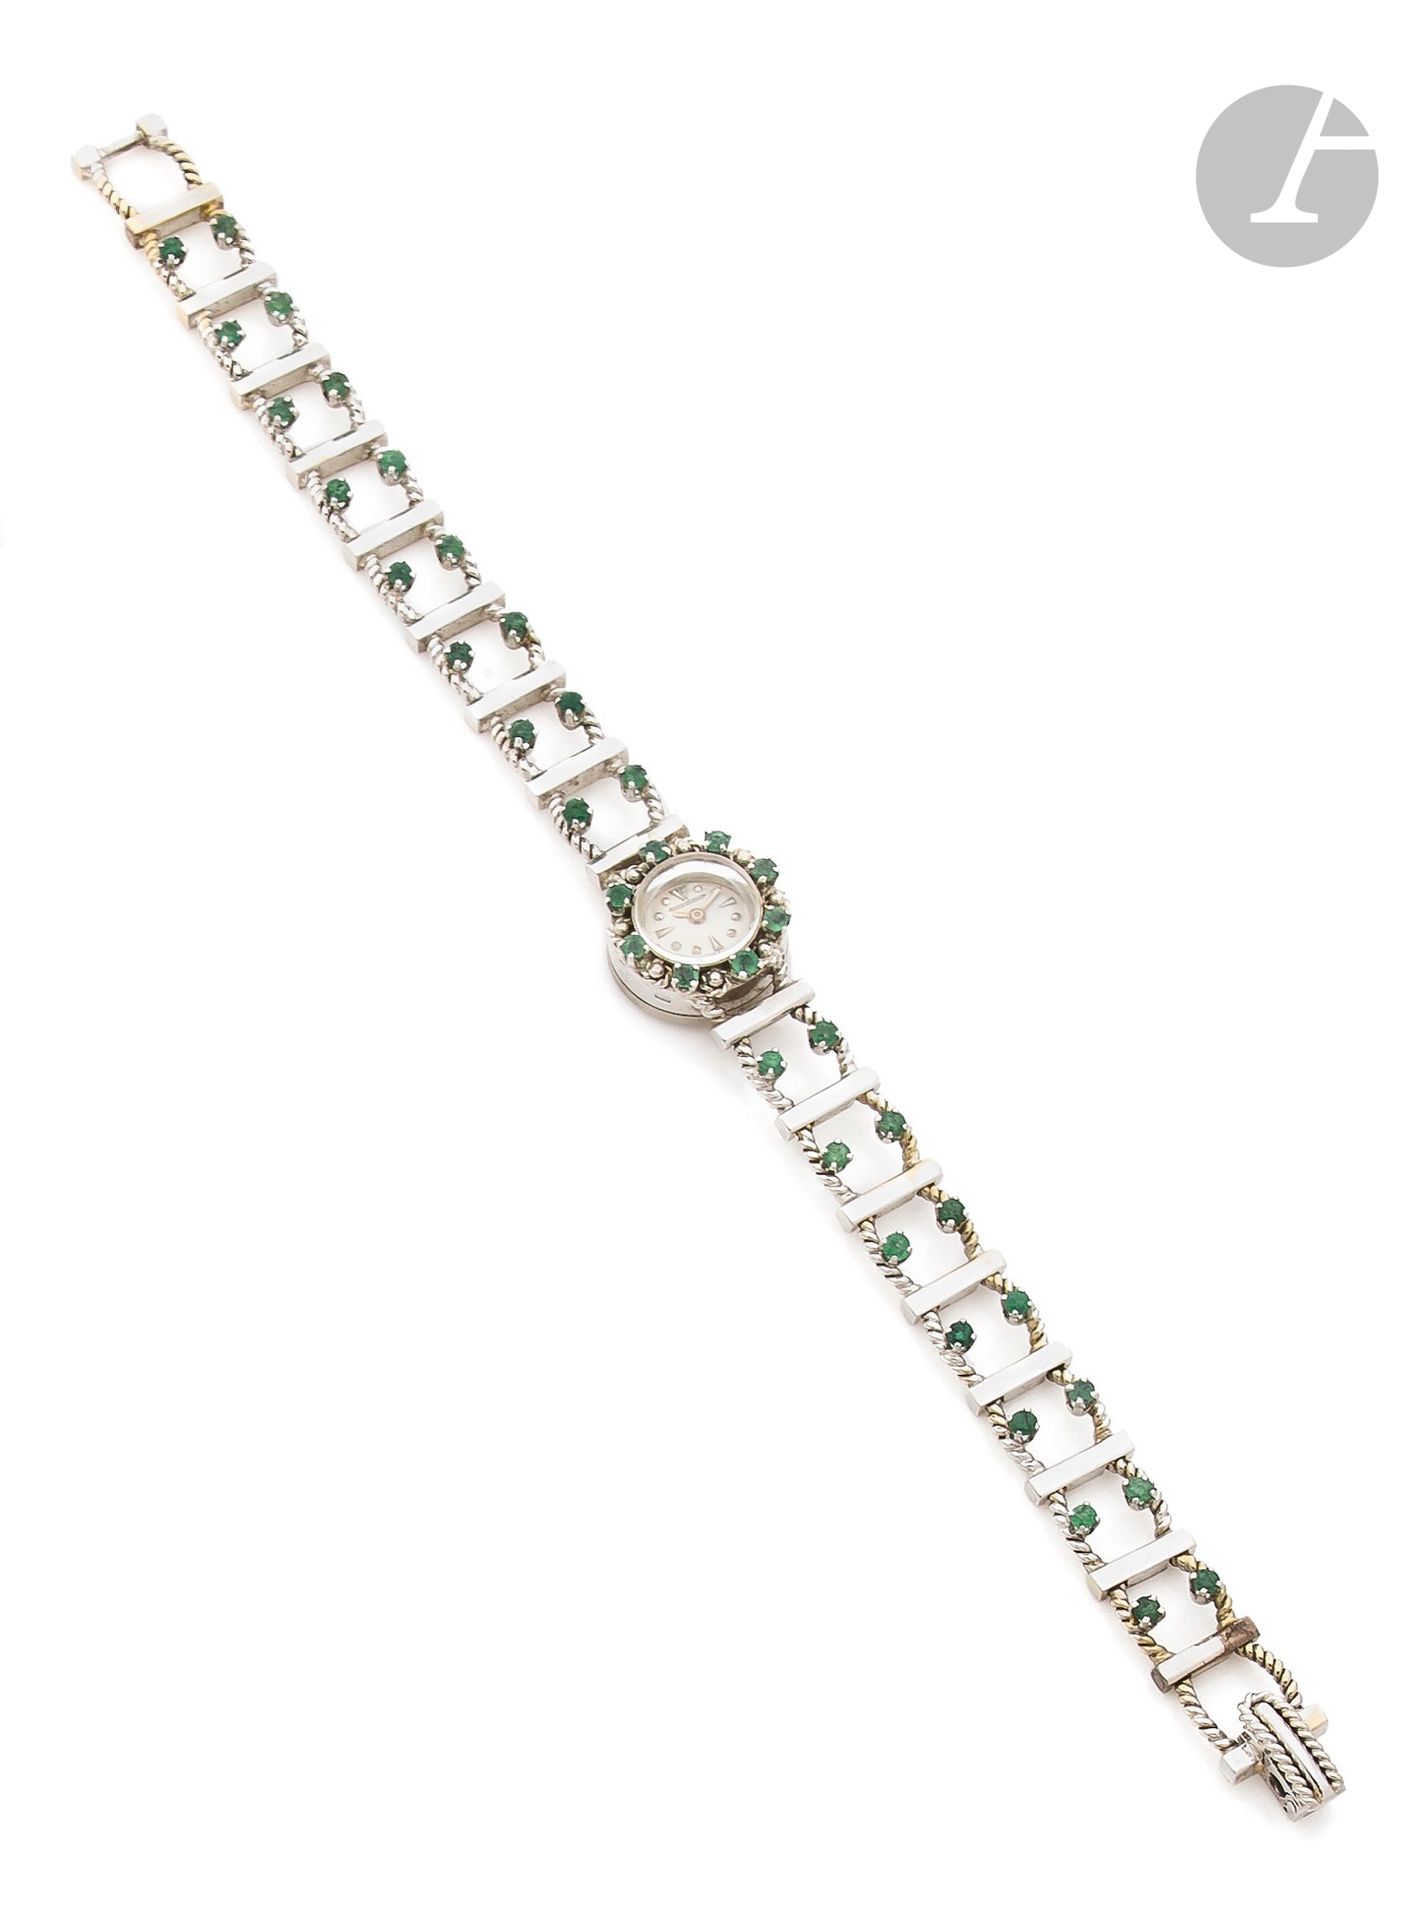 Null JAEGER LECOULTRE
DUOPLAN
1940s
Reloj de pulsera de señora en oro blanco de &hellip;